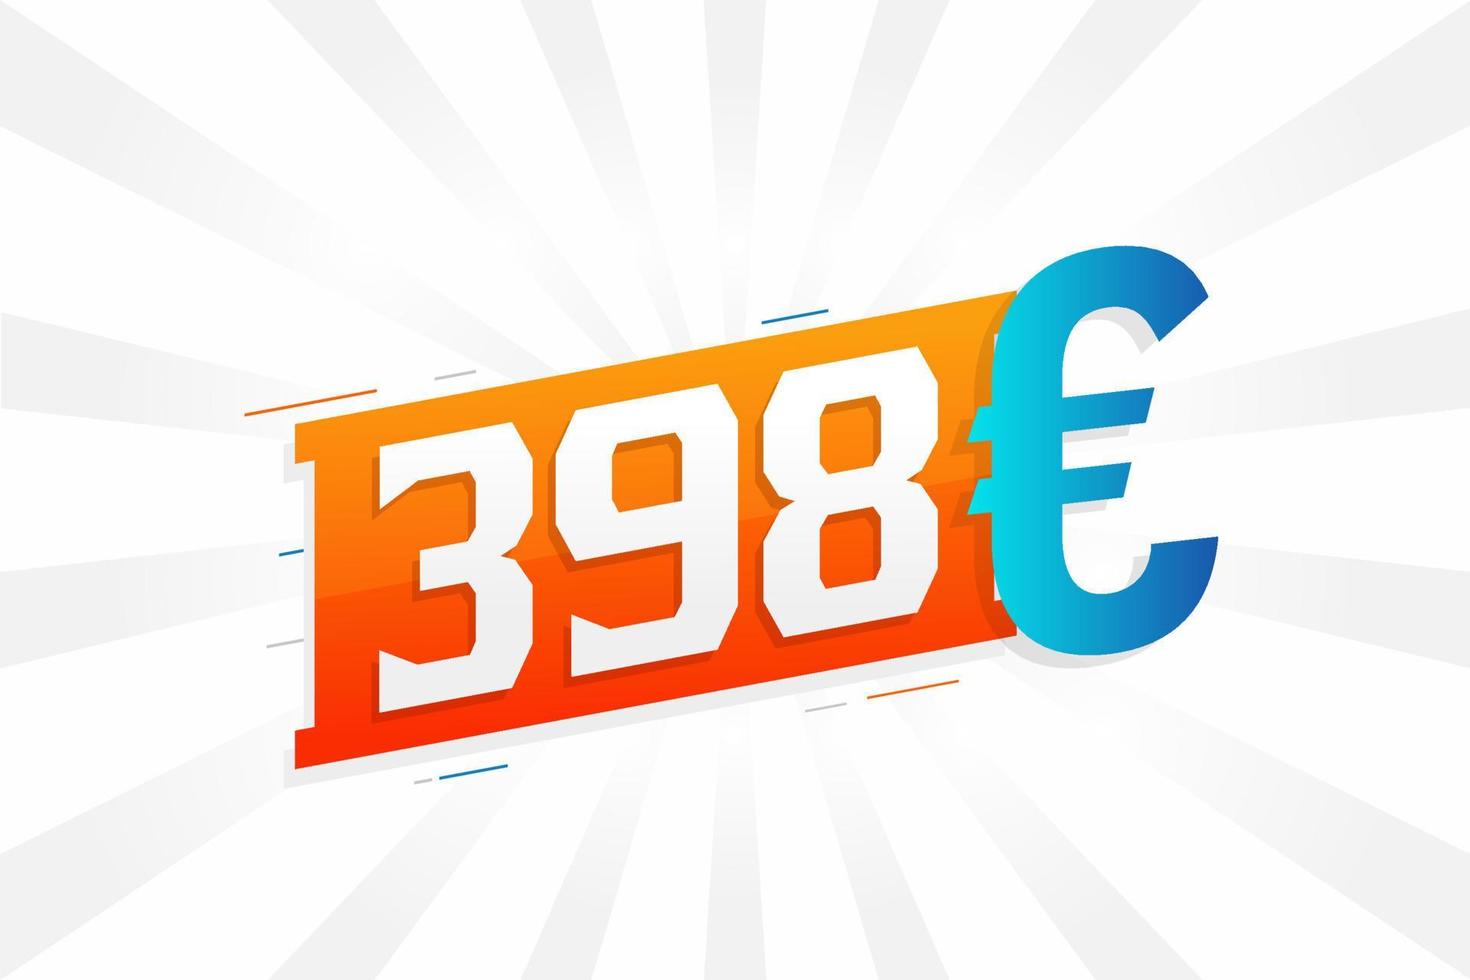 Símbolo de texto de vetor de moeda de 398 euros. vetor de estoque de dinheiro da união europeia de 398 euros